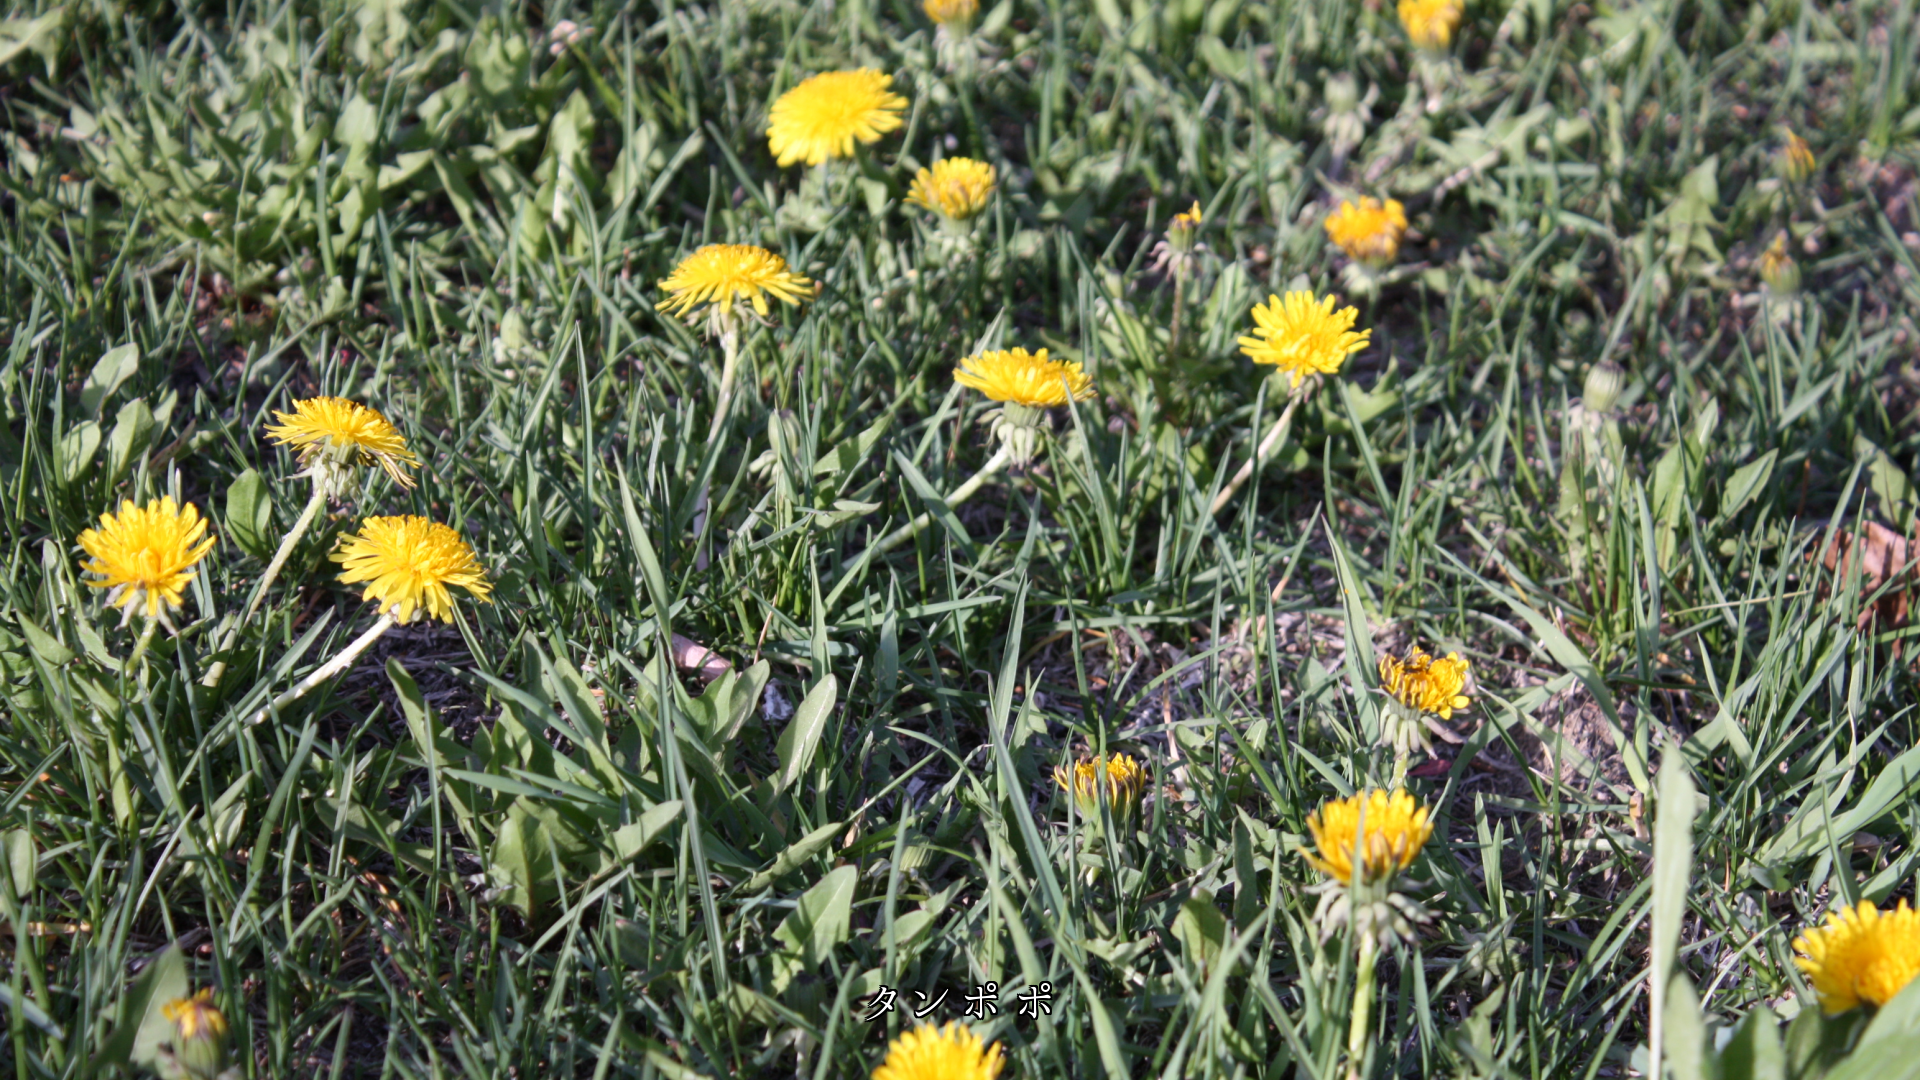 野原で春の訪れを告げる　小さな優しい花たち　心がほっこり